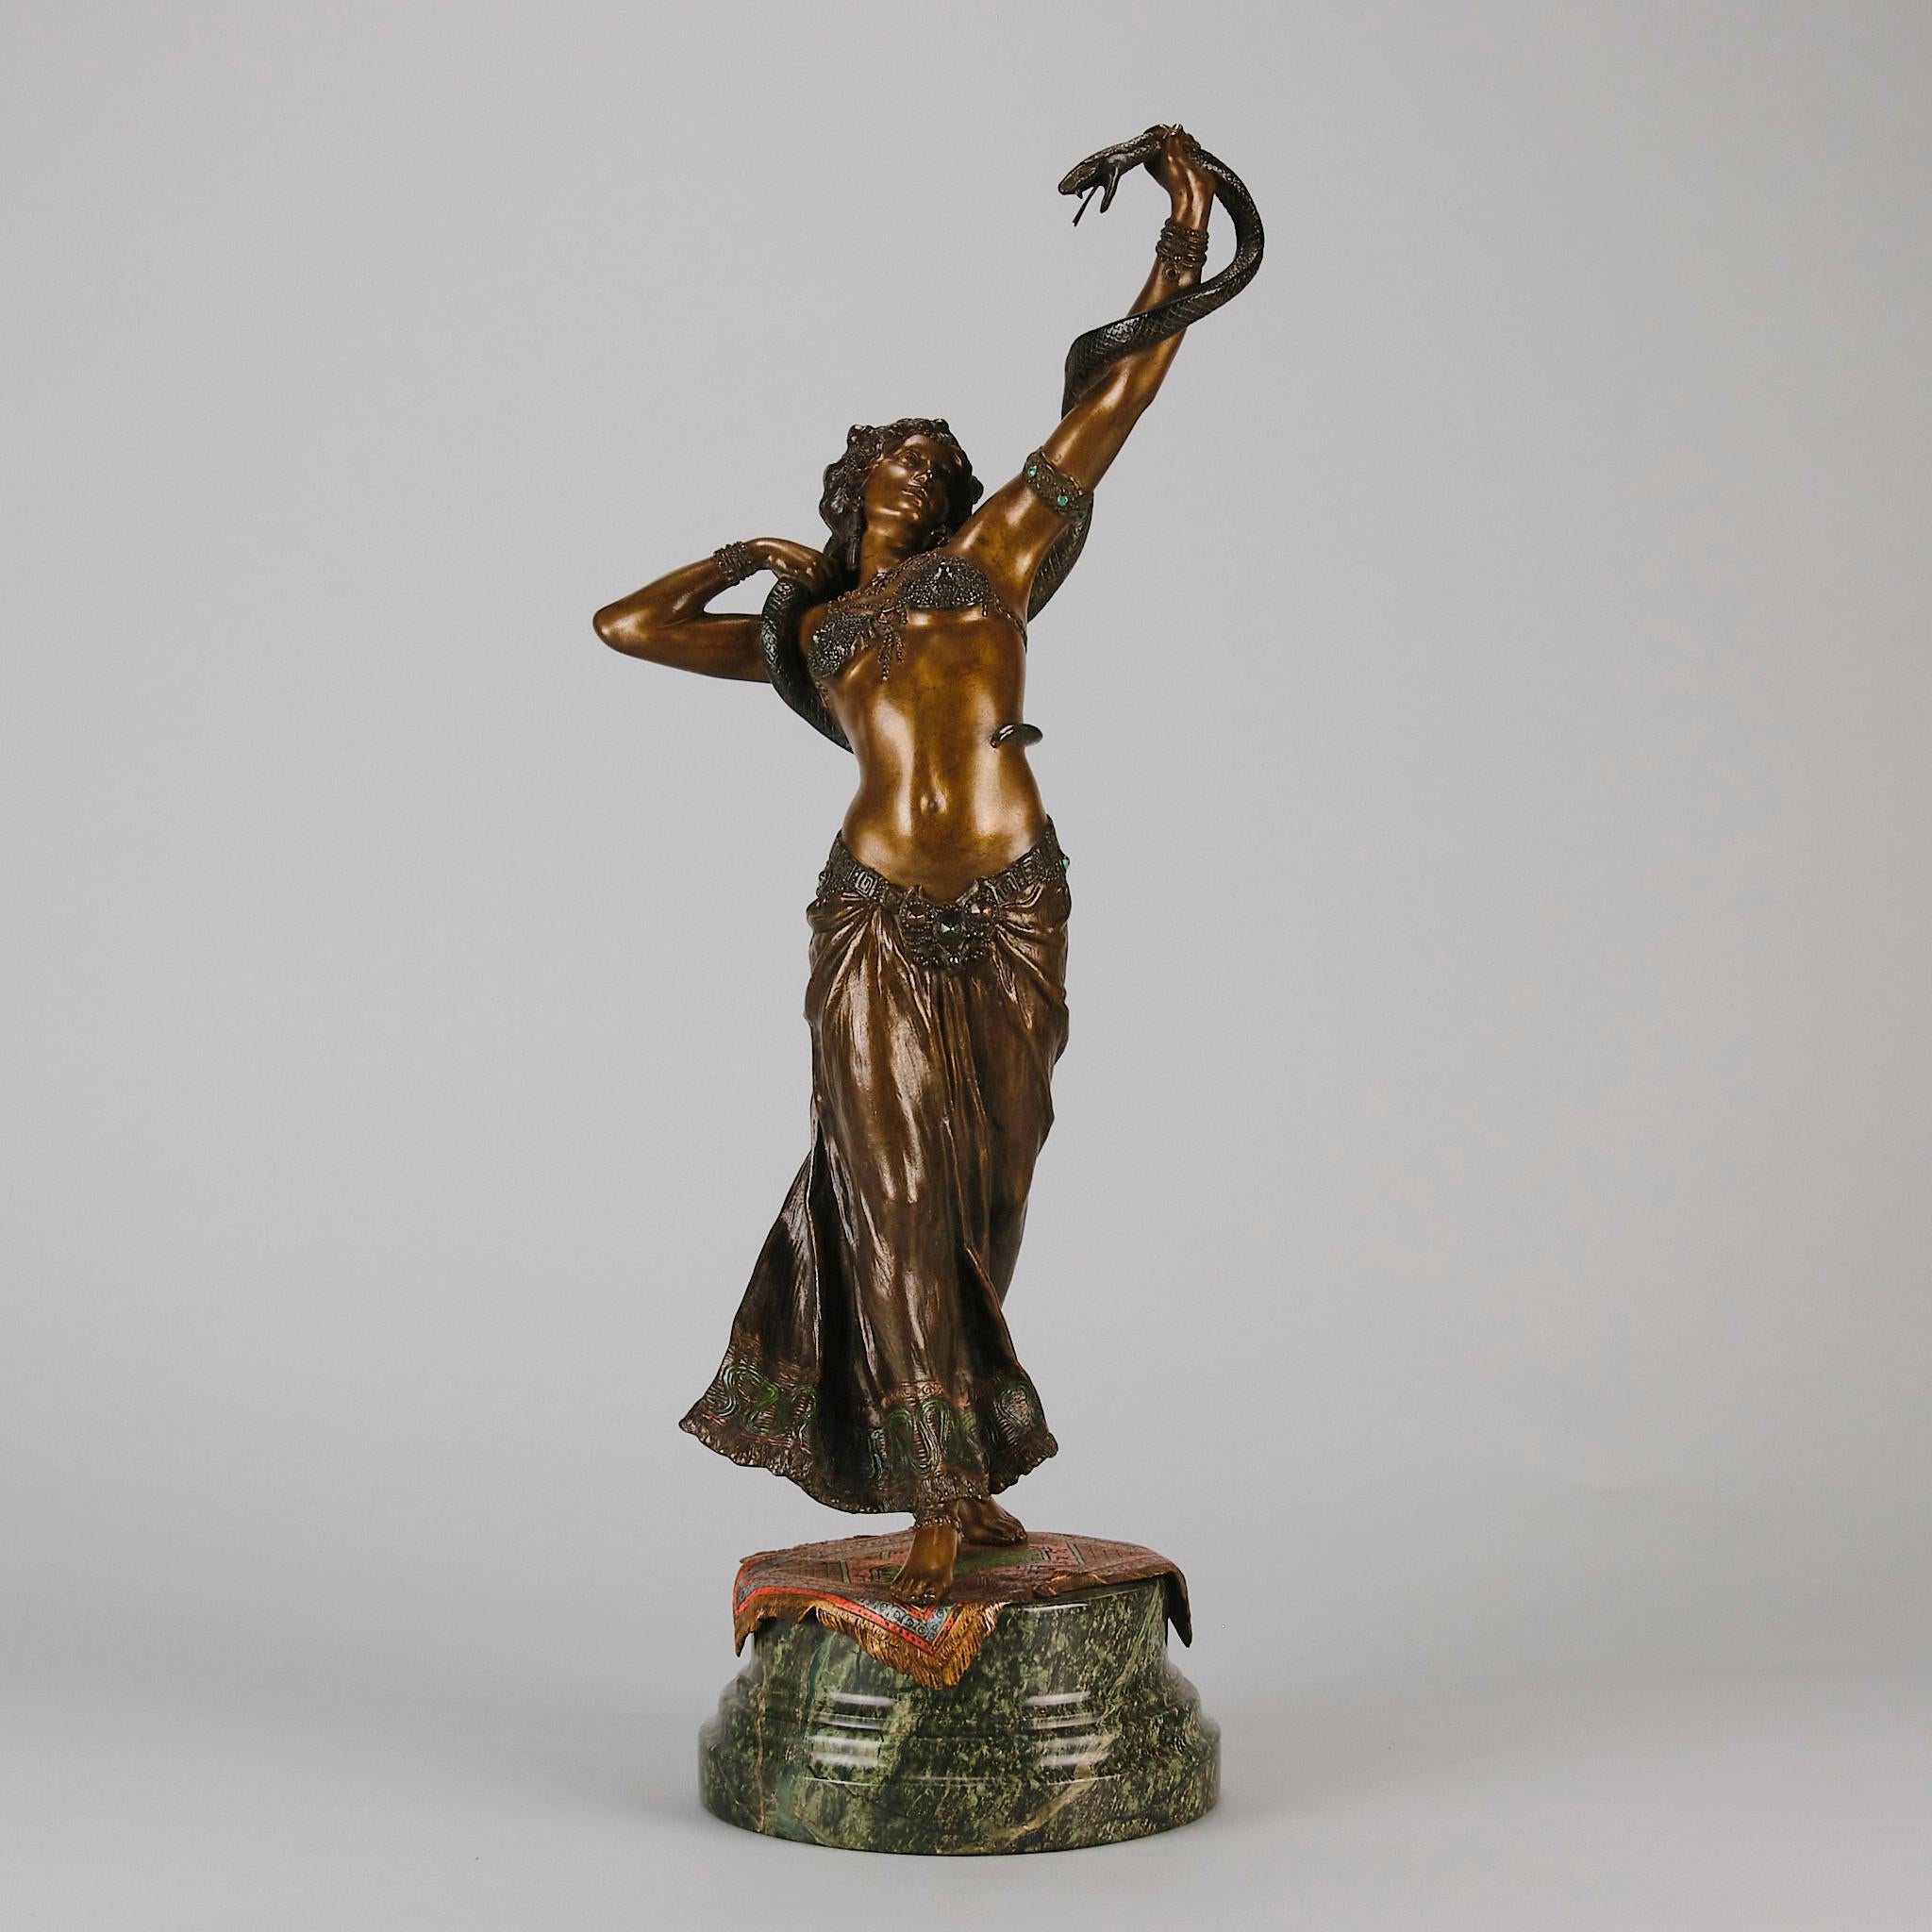 Excellent bronze autrichien peint à froid du début du 20e siècle représentant une danseuse orientale tenant un serpent au-dessus de sa tête. Très belles couleurs et fabuleux détails de surface finis à la main. Signé avec le 'B' de Bergman dans un